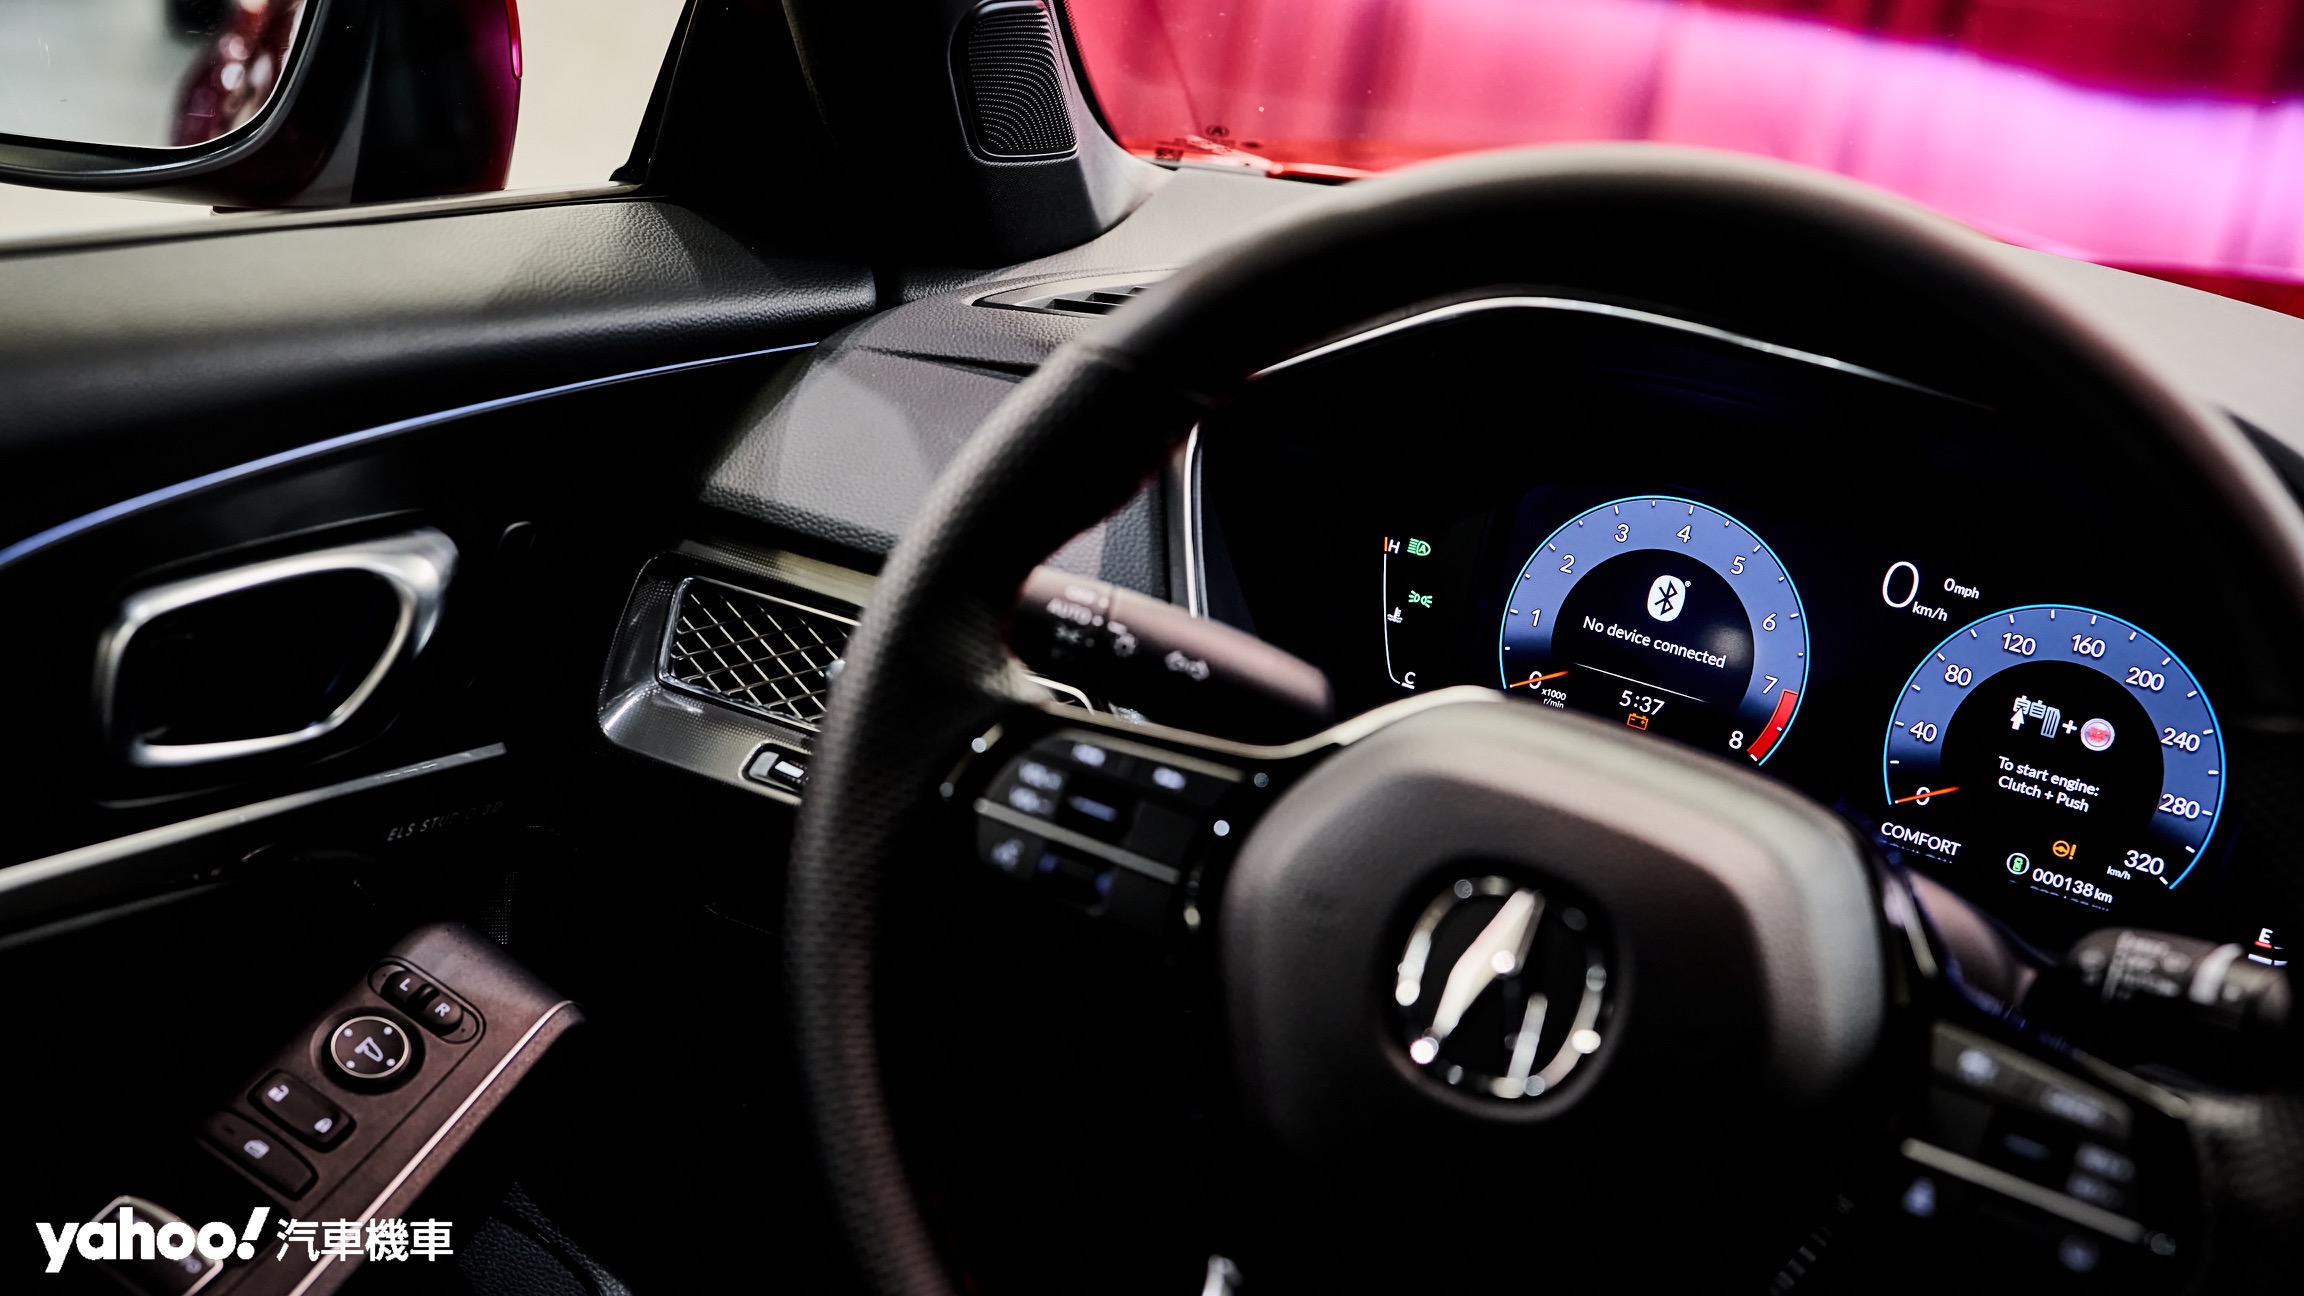 10.2吋全數位儀表有著相當清晰細緻的佈局且不難看出Acura Integra與Honda Civic的相似之處。